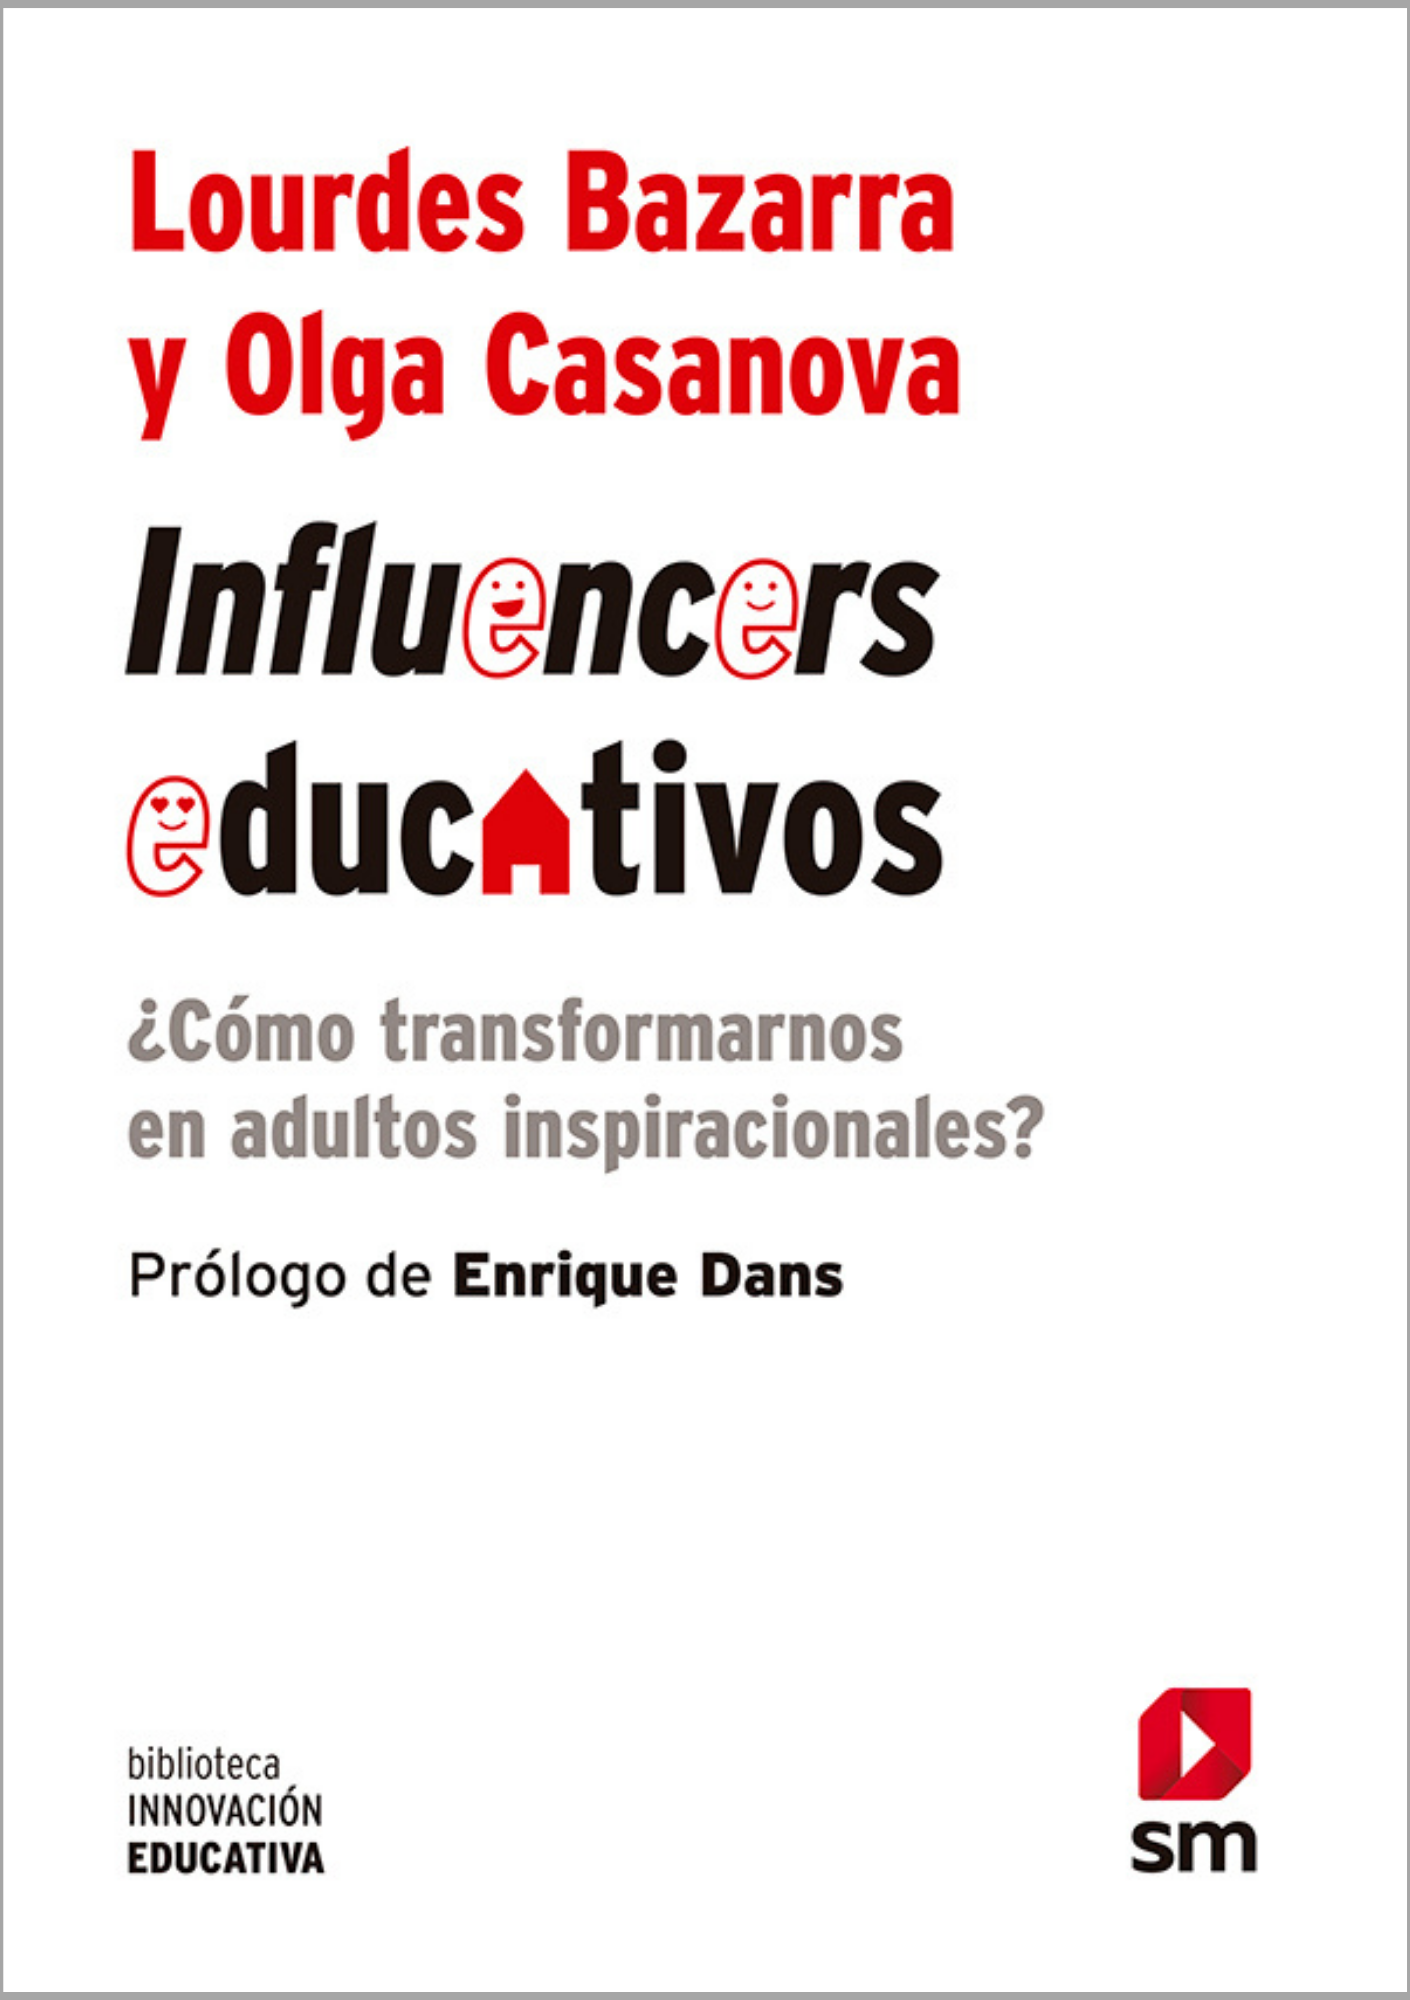 Coberta d'Influencers educativos, un llibre de Lourdes Bazarra i Olga Casanova